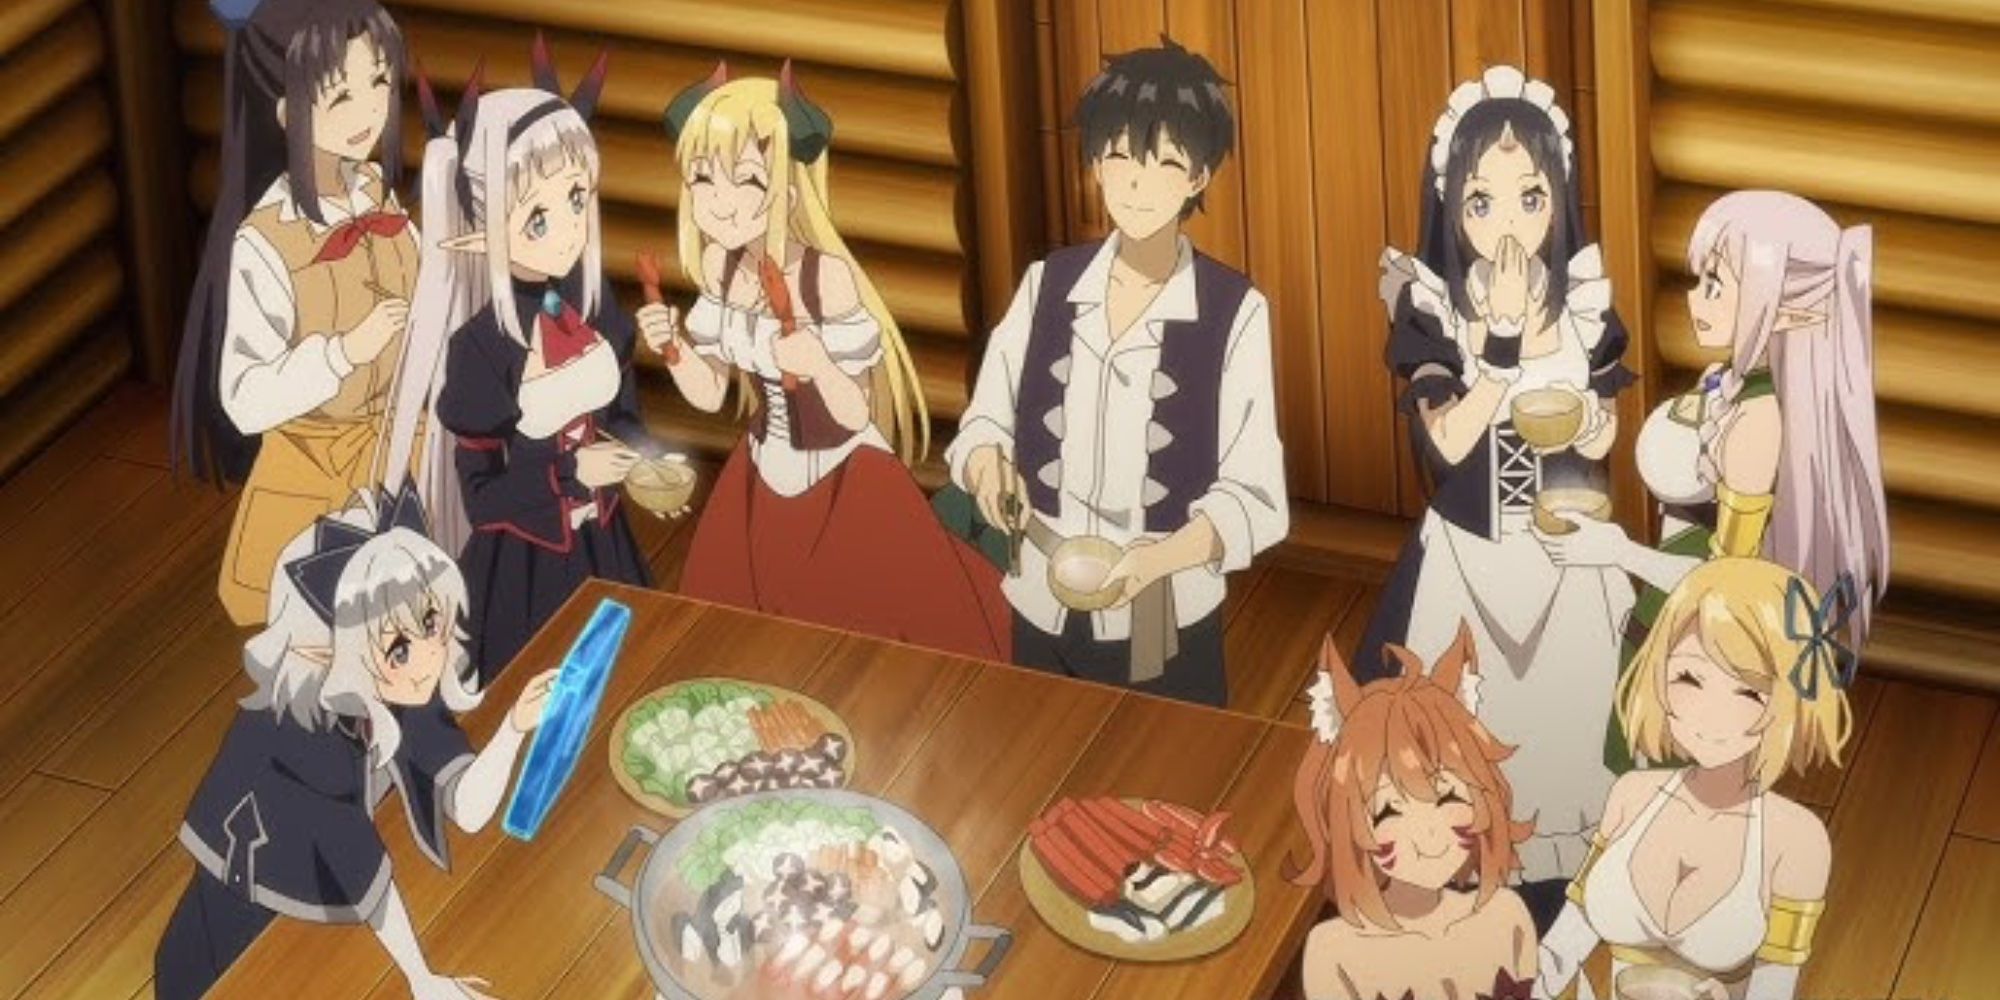 Hiraku making Mayonnaise and serving it to everyone